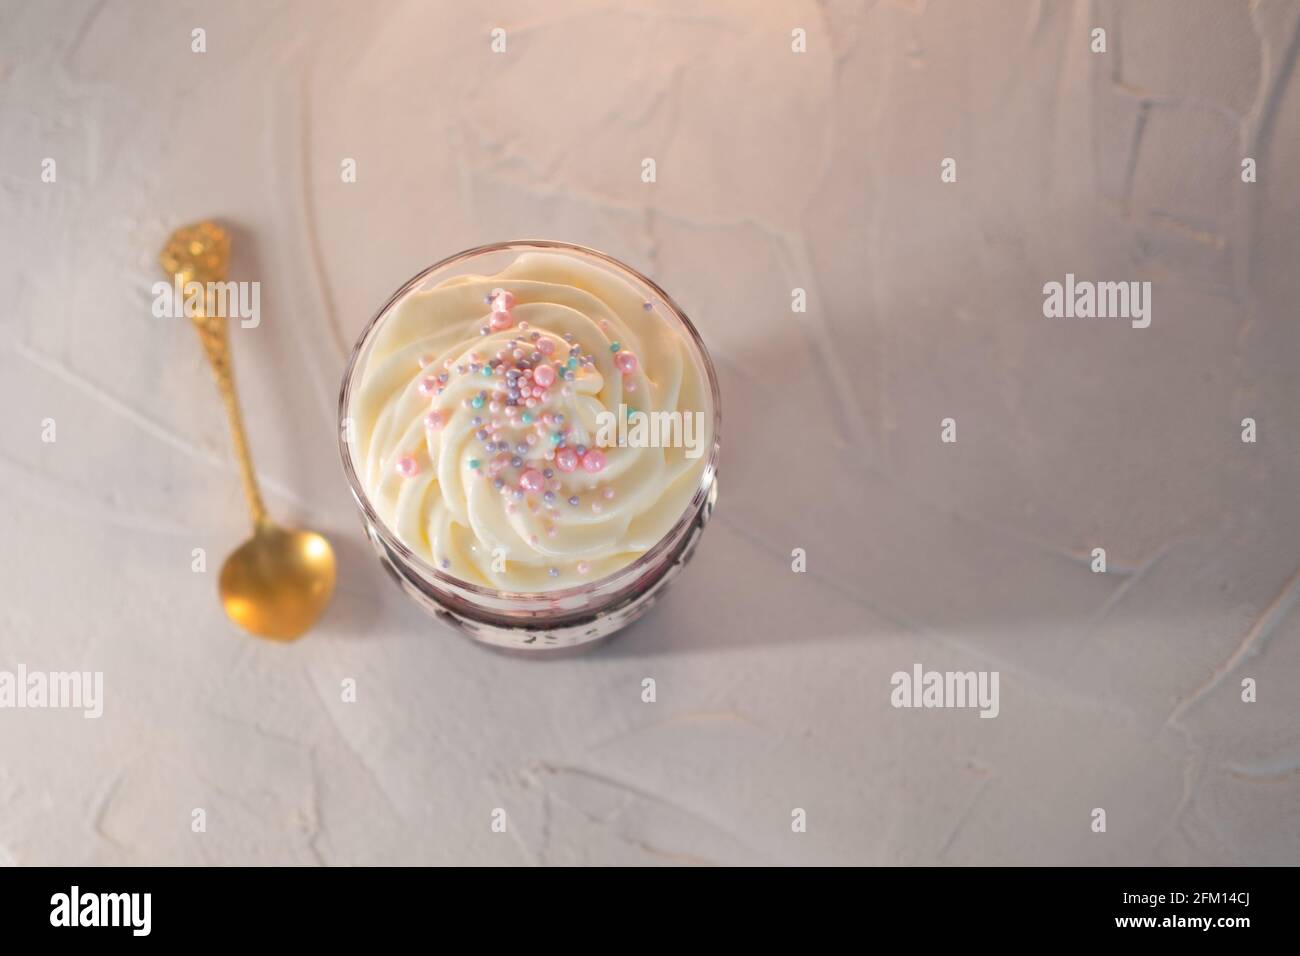 Kirsche Kleinigkeiten, Dessert in einem Glas, Kuchen, Beere und Mascapon Creme, Creme ist oben dekoriert, Draufsicht. Stockfoto